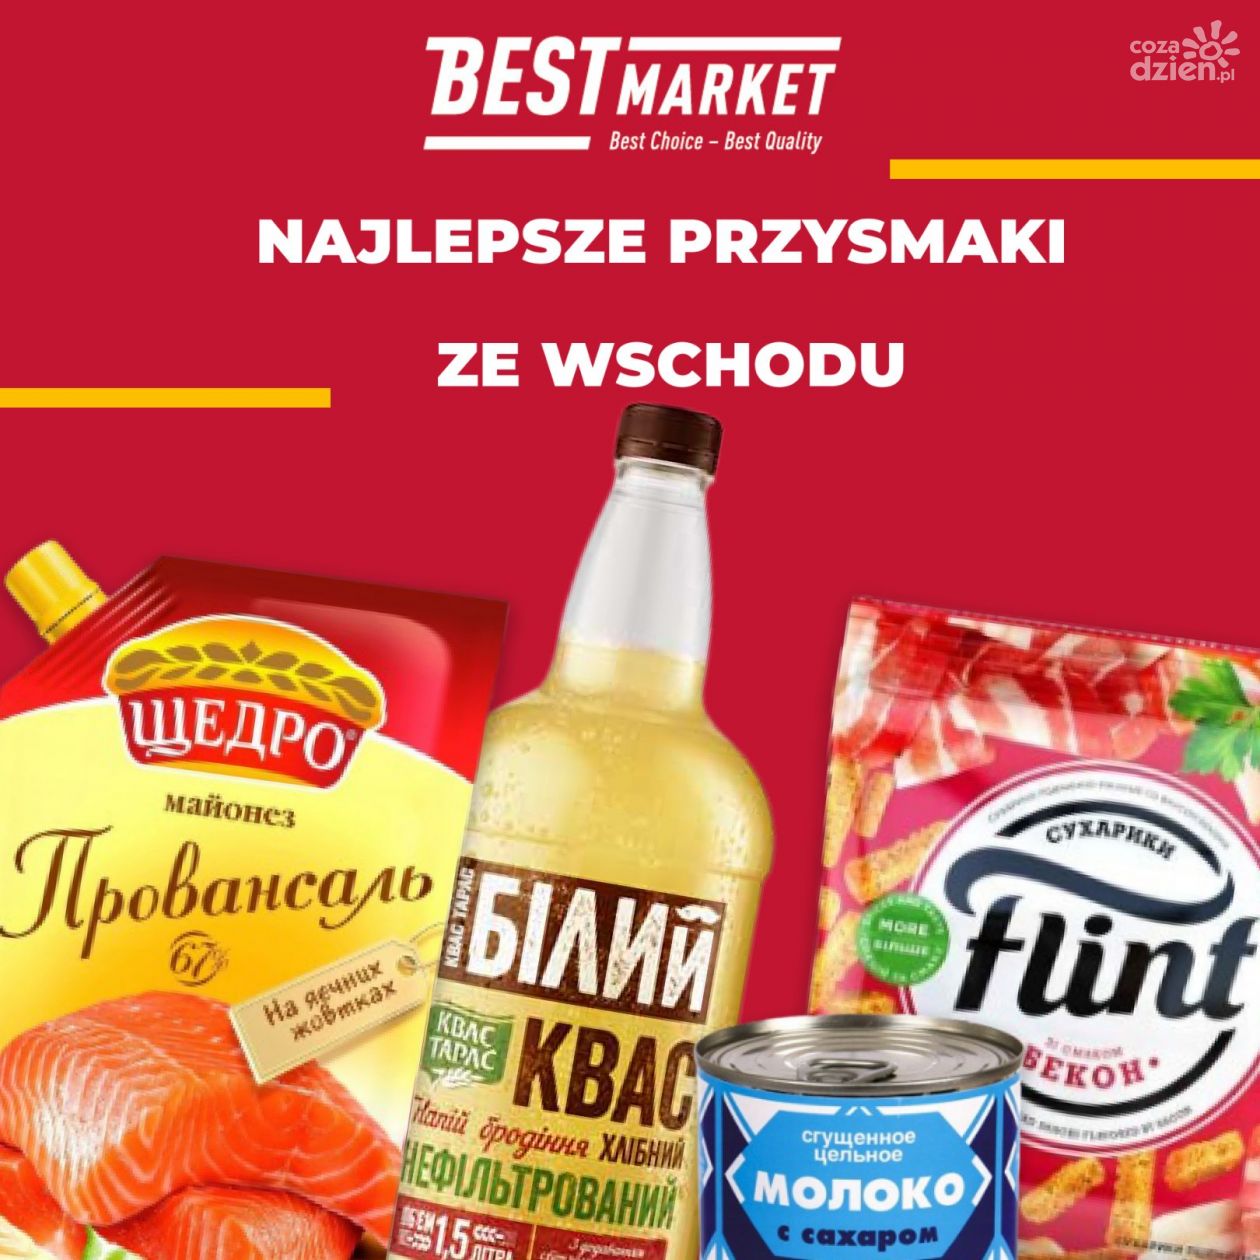 Ukraiński market otworzy się w centrum Kielc